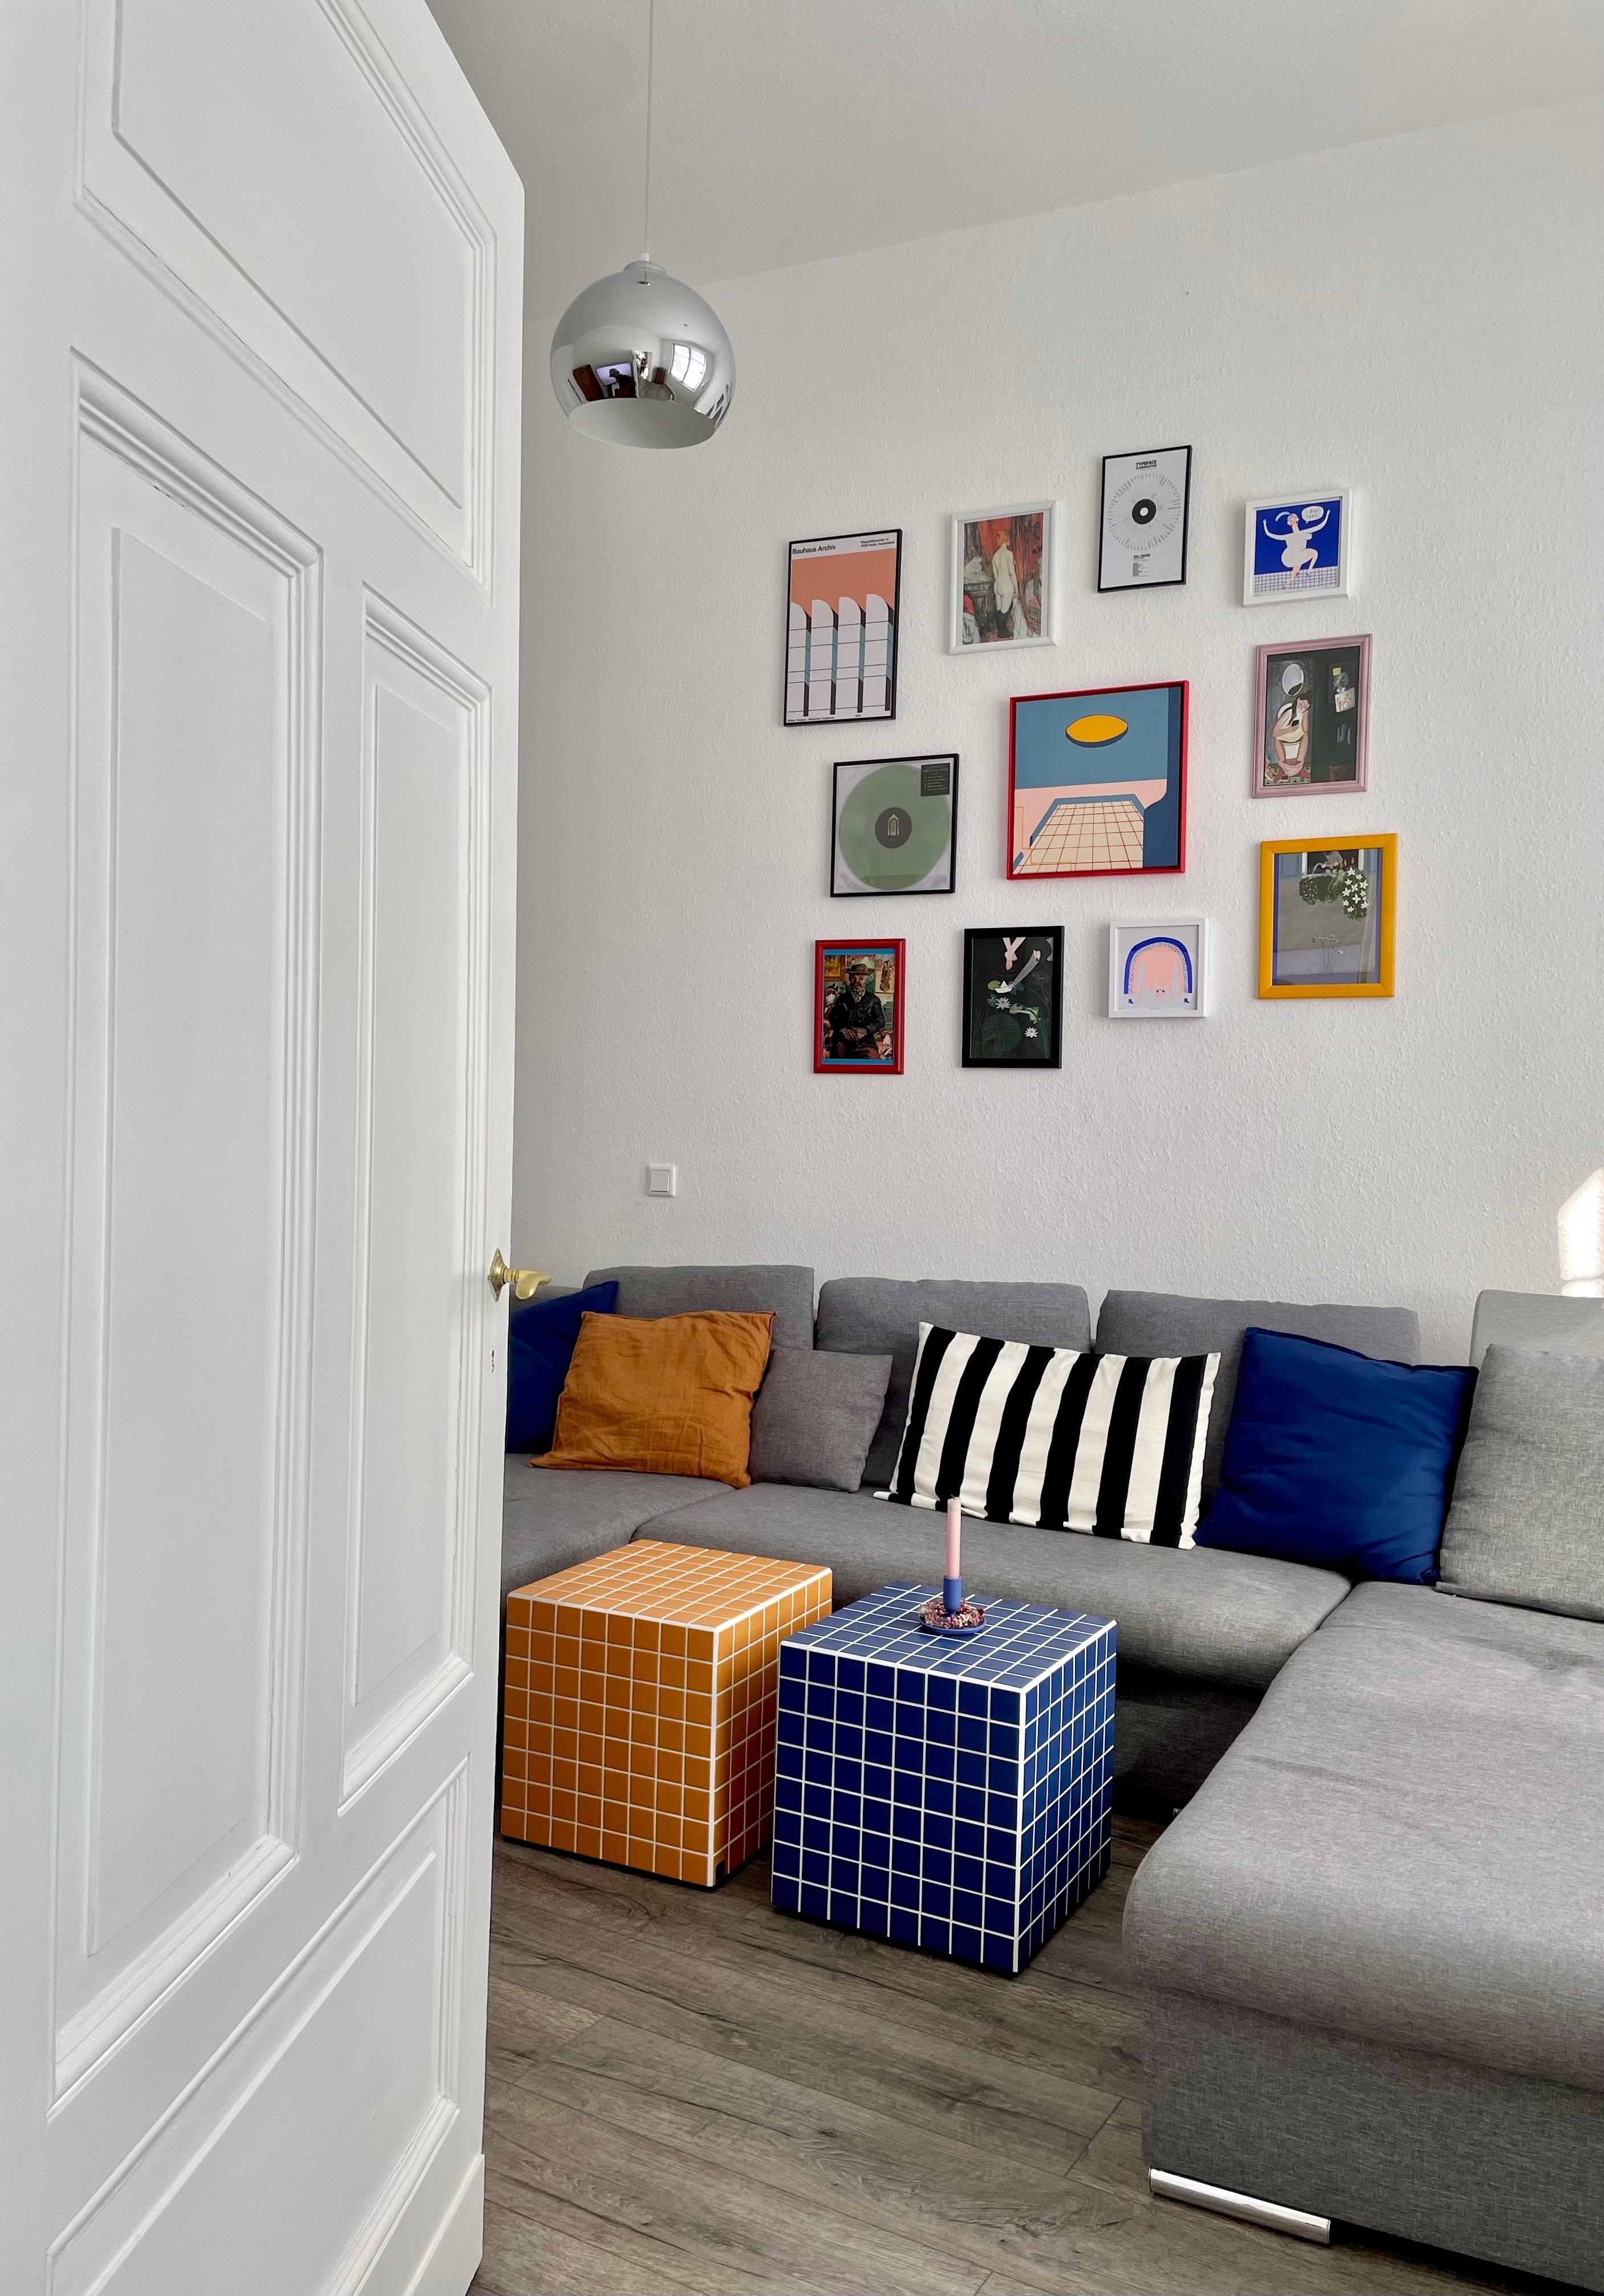 🧡💙 #altbauliebe #bildergalerie #wohnzimmer #couchliebt